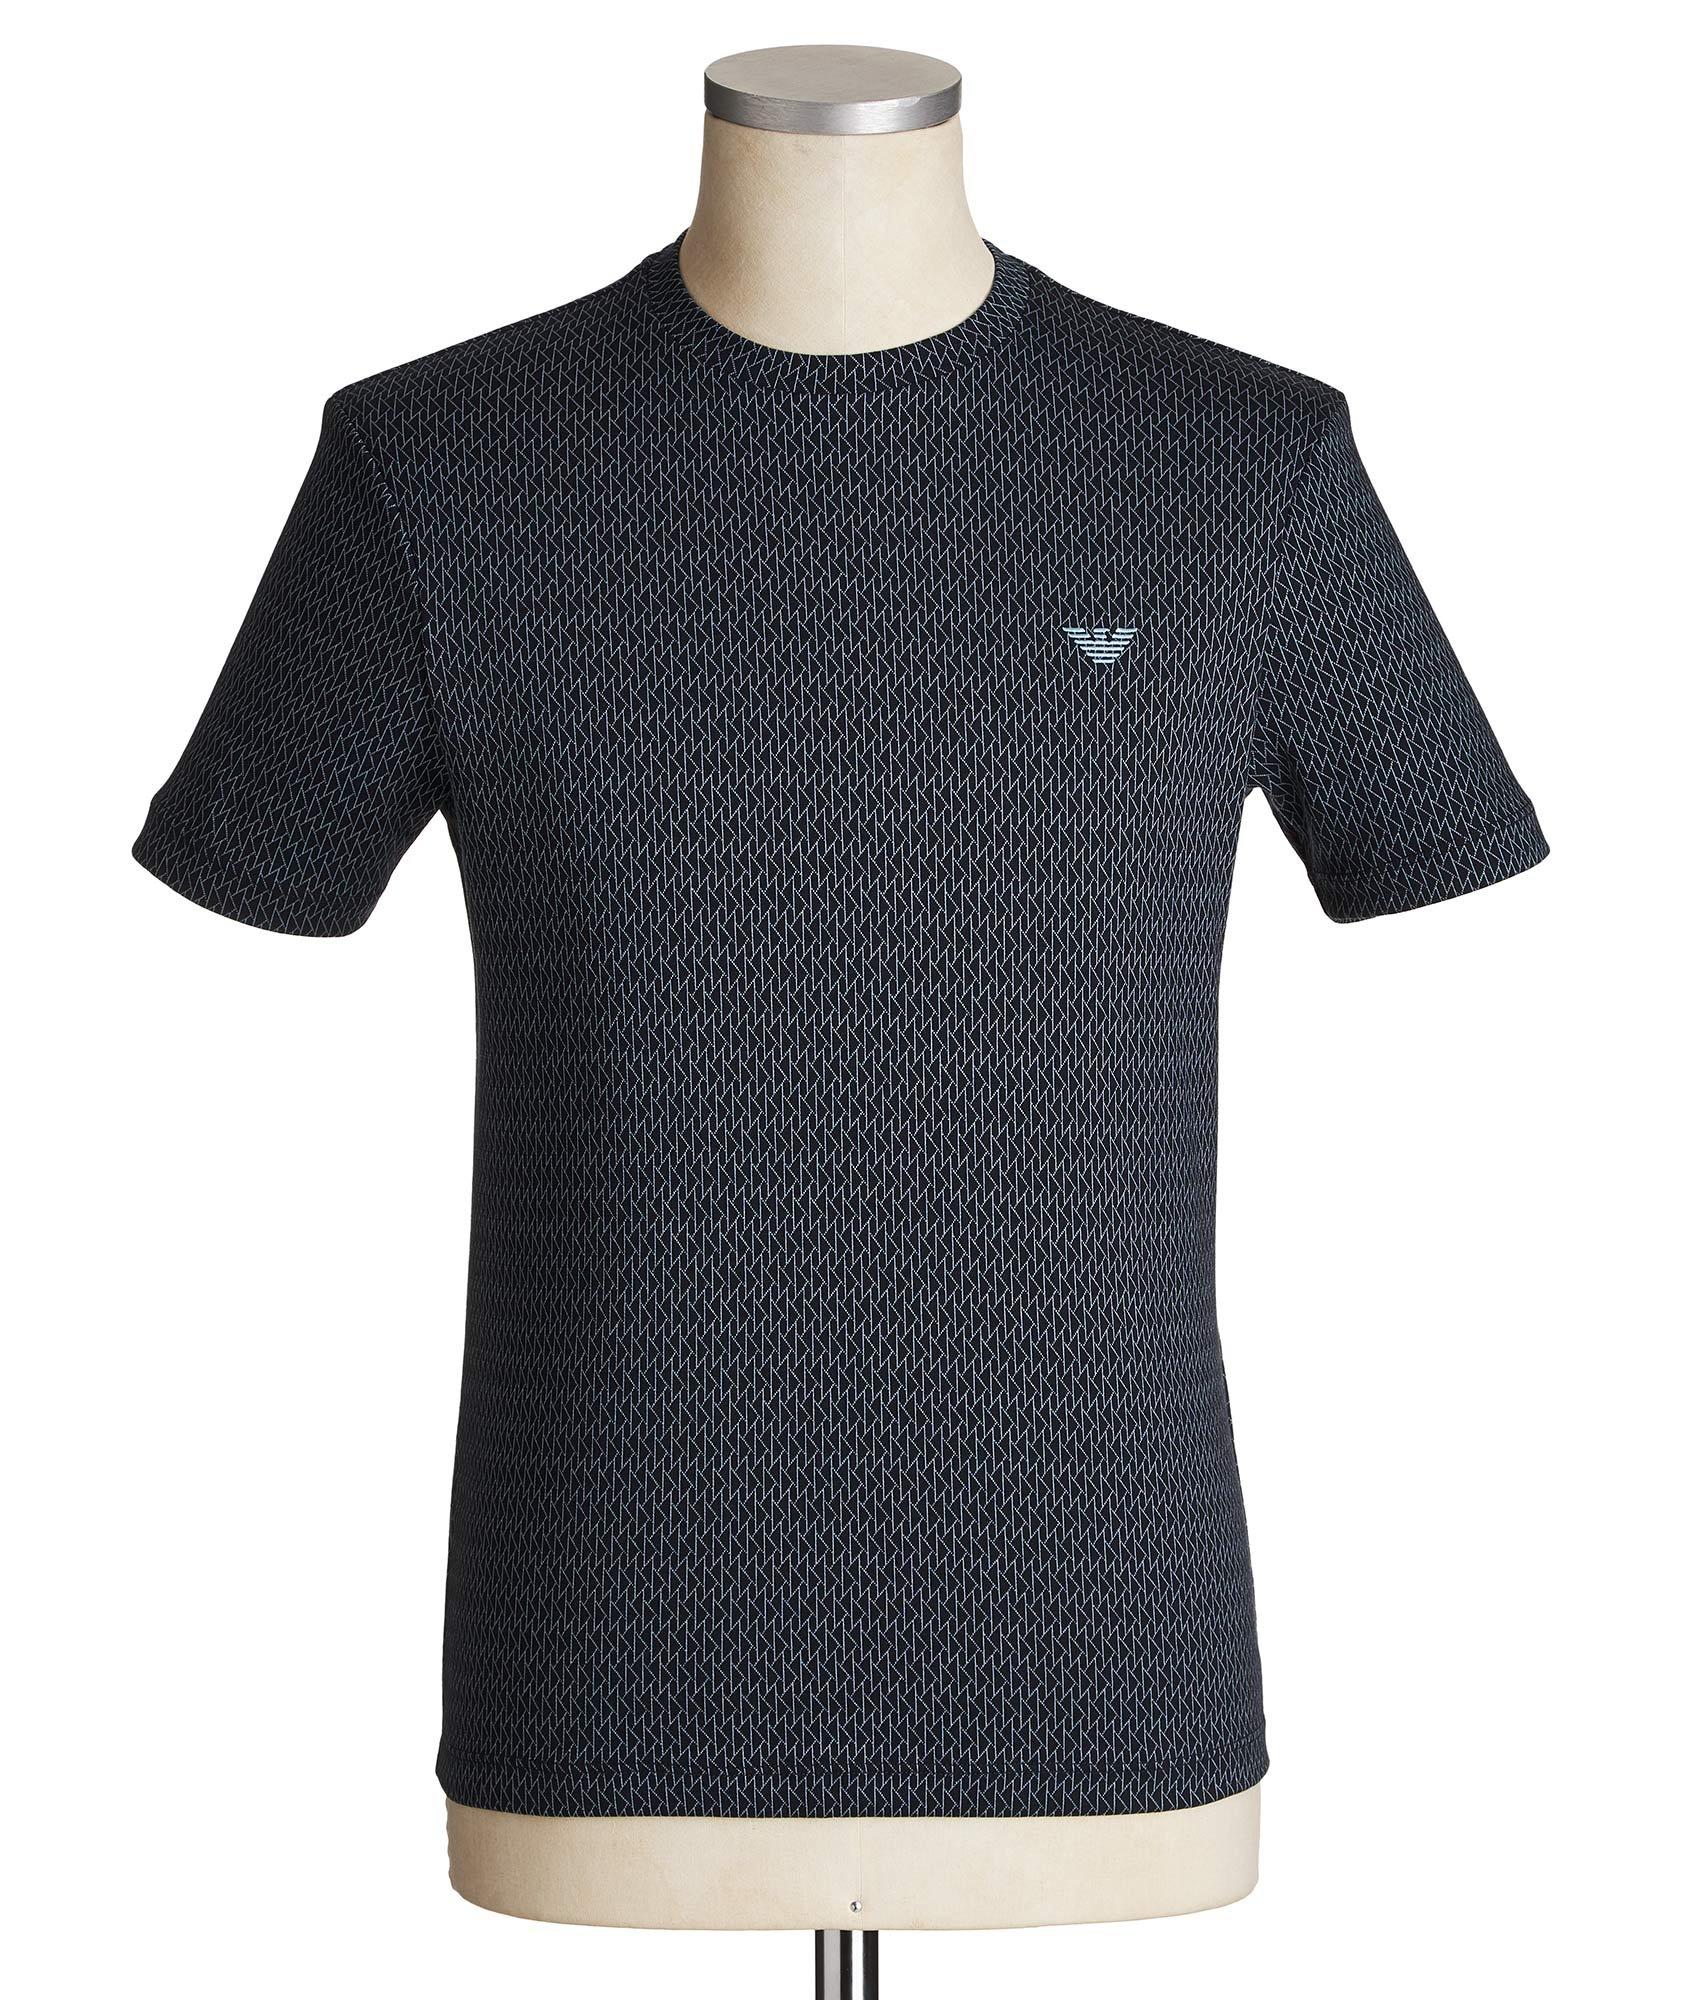 T-shirt en coton à motif géométrique image 0